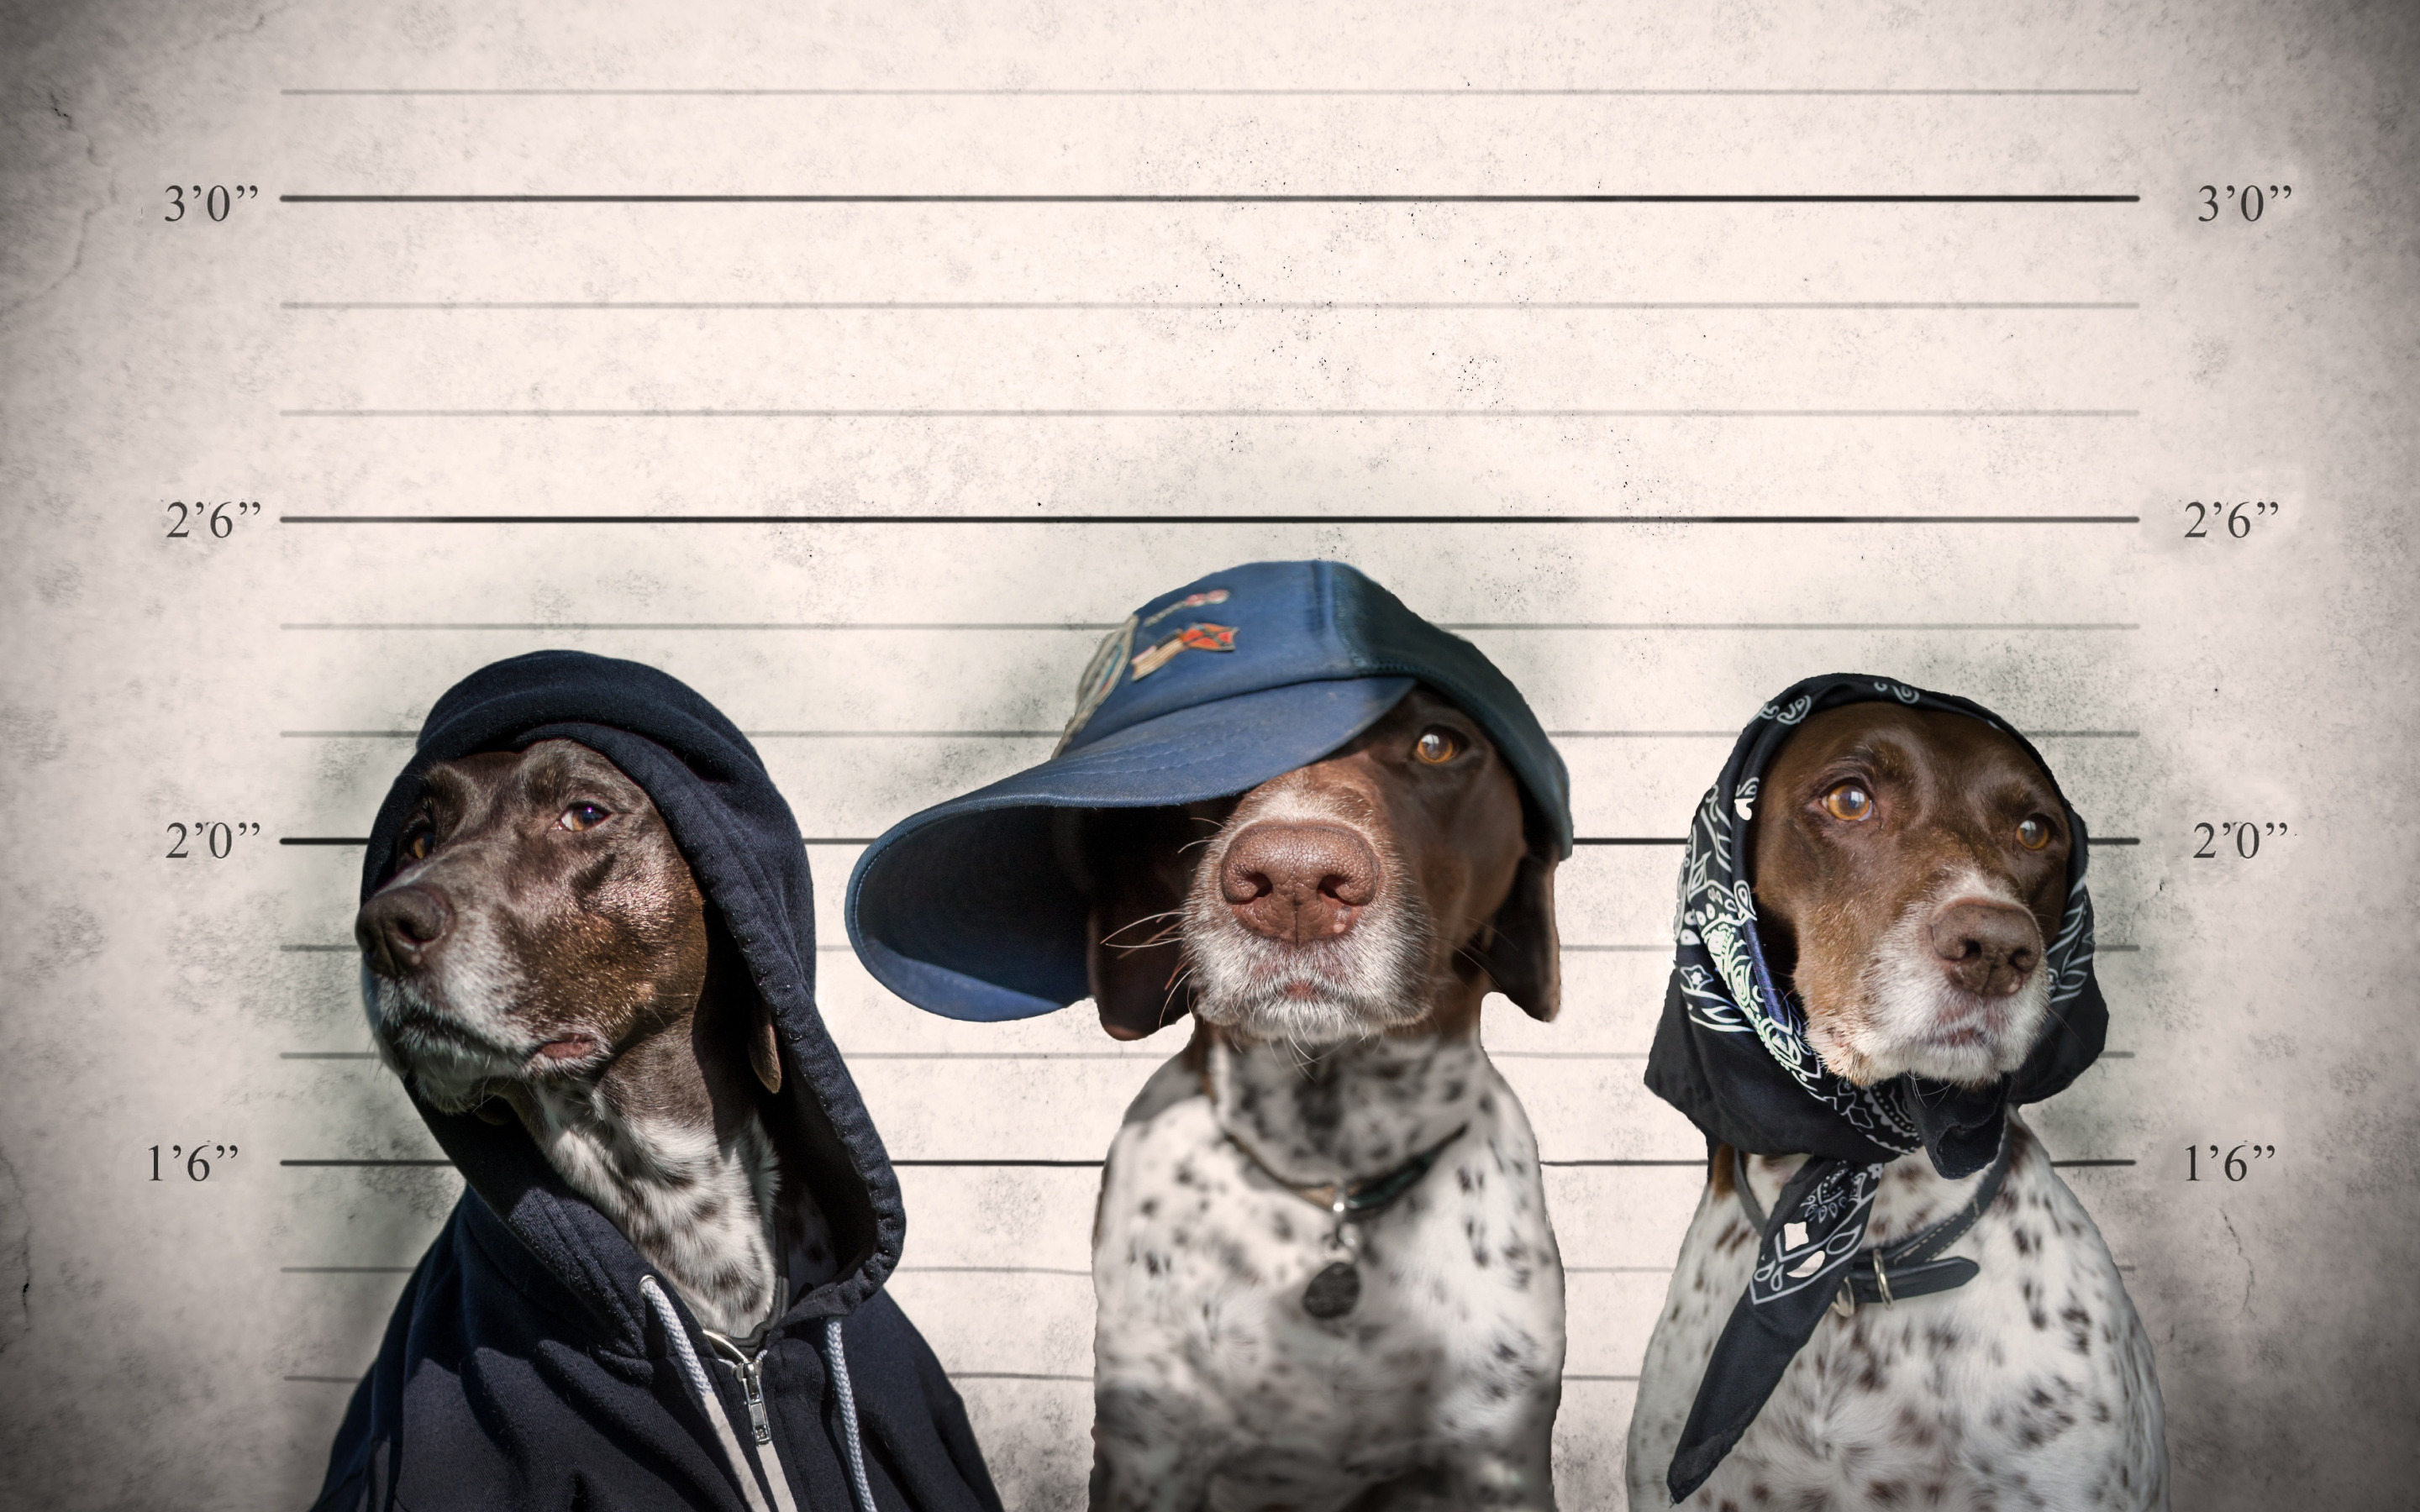 Dog new tricks. Смешные собаки. Три смешные собаки. Опознание животных. Животные преступники.